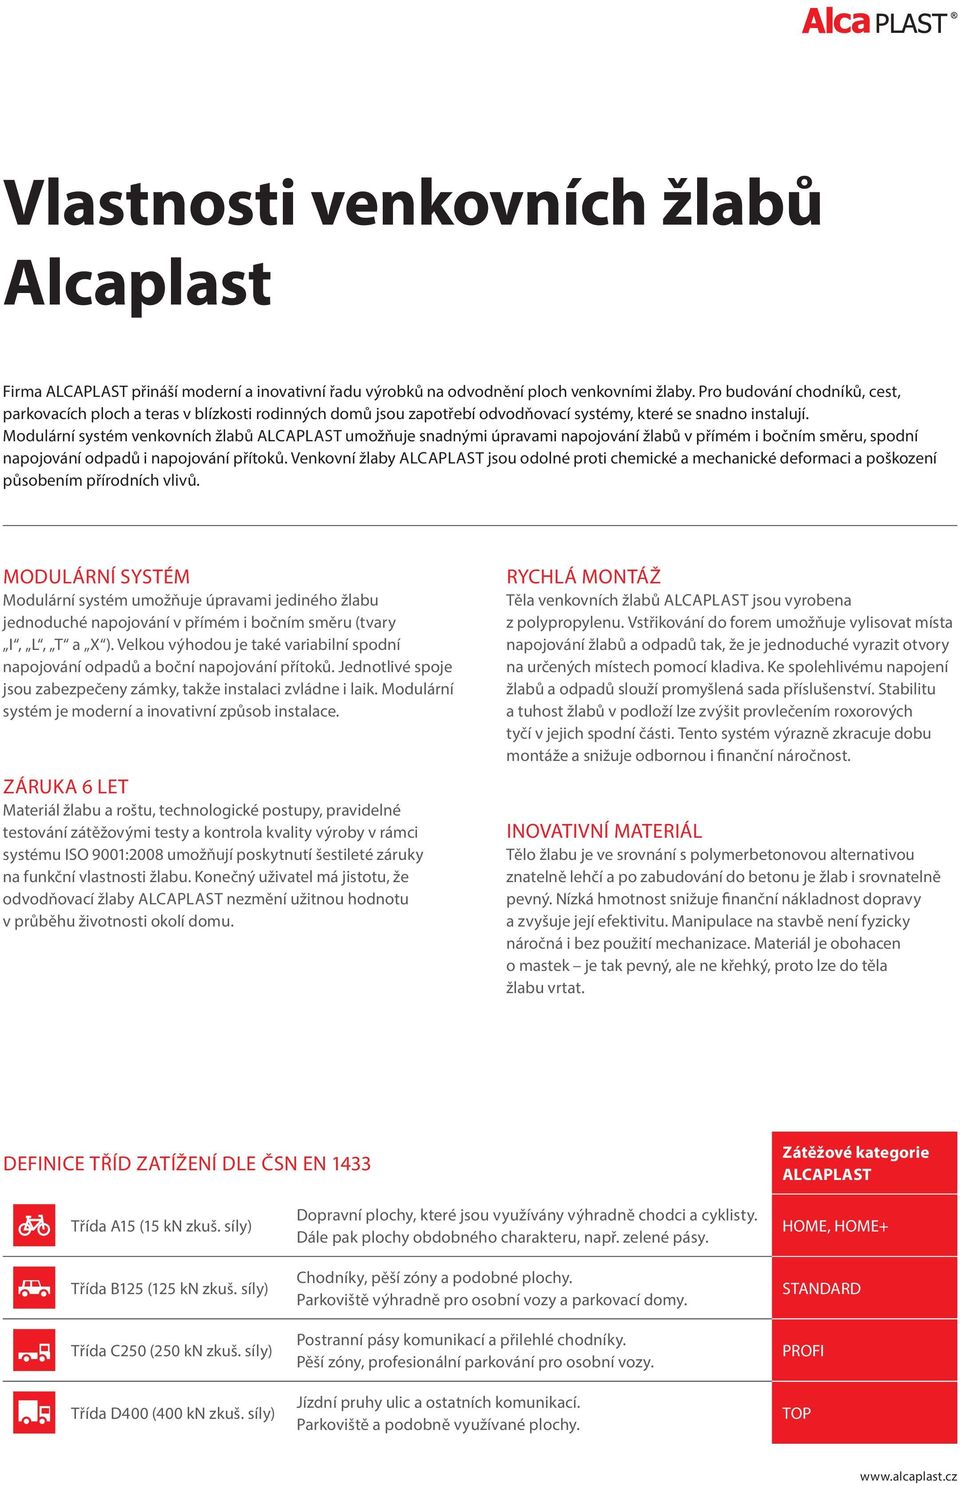 Modulární systém venkovních žlabů ALCAPLAST umožňuje snadnými úpravami napojování žlabů v přímém i bočním směru, spodní napojování odpadů i napojování přítoků.